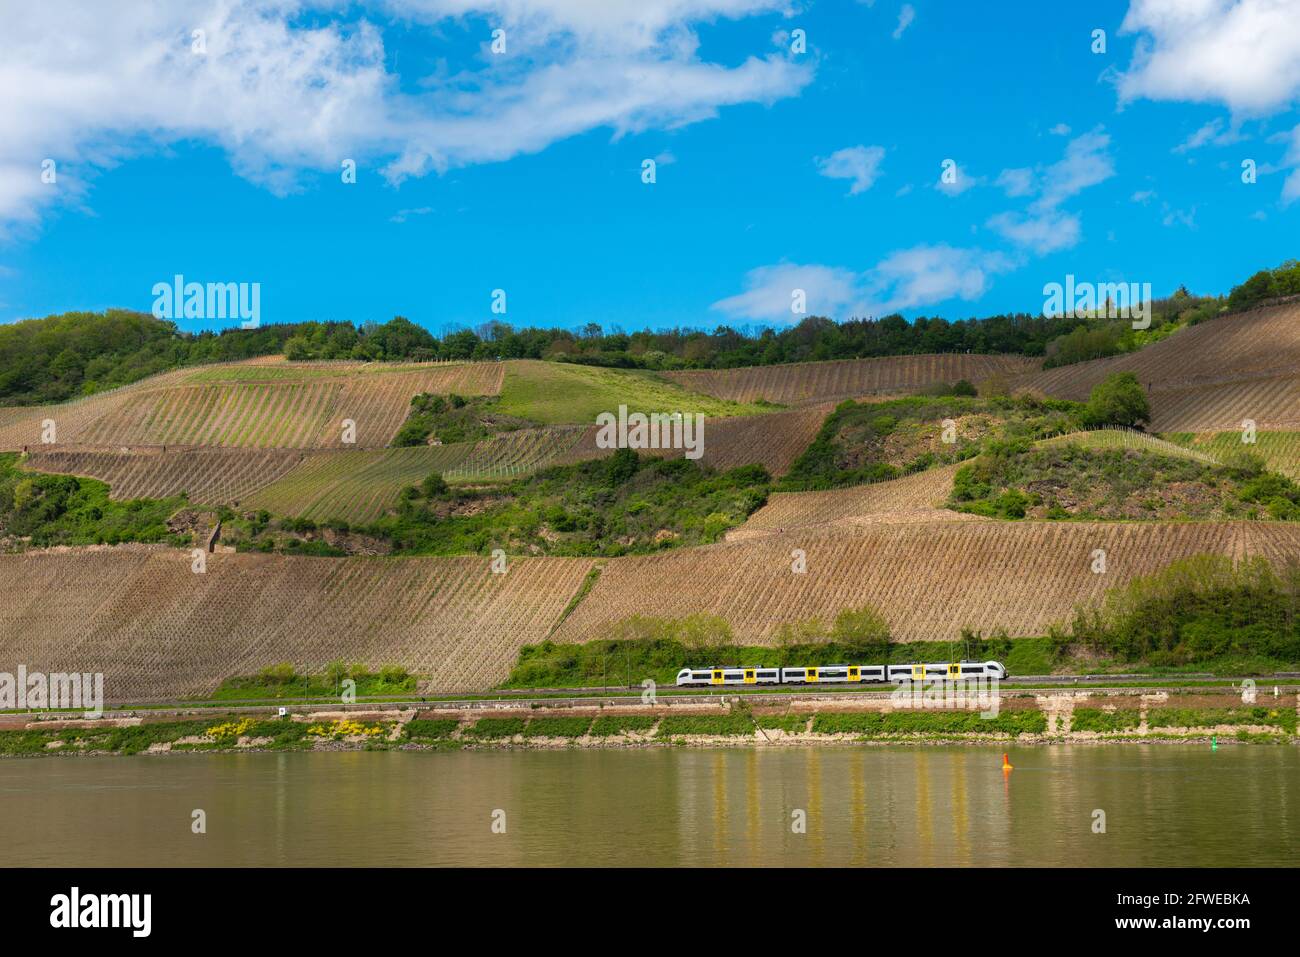 Forte coltivazione di pendii ai vigneti di Bopparder Hamm nella Valle del Medio Reno superiore, patrimonio mondiale dell'UNESCO, Boppard, Renania-Palatinato, Germania Foto Stock